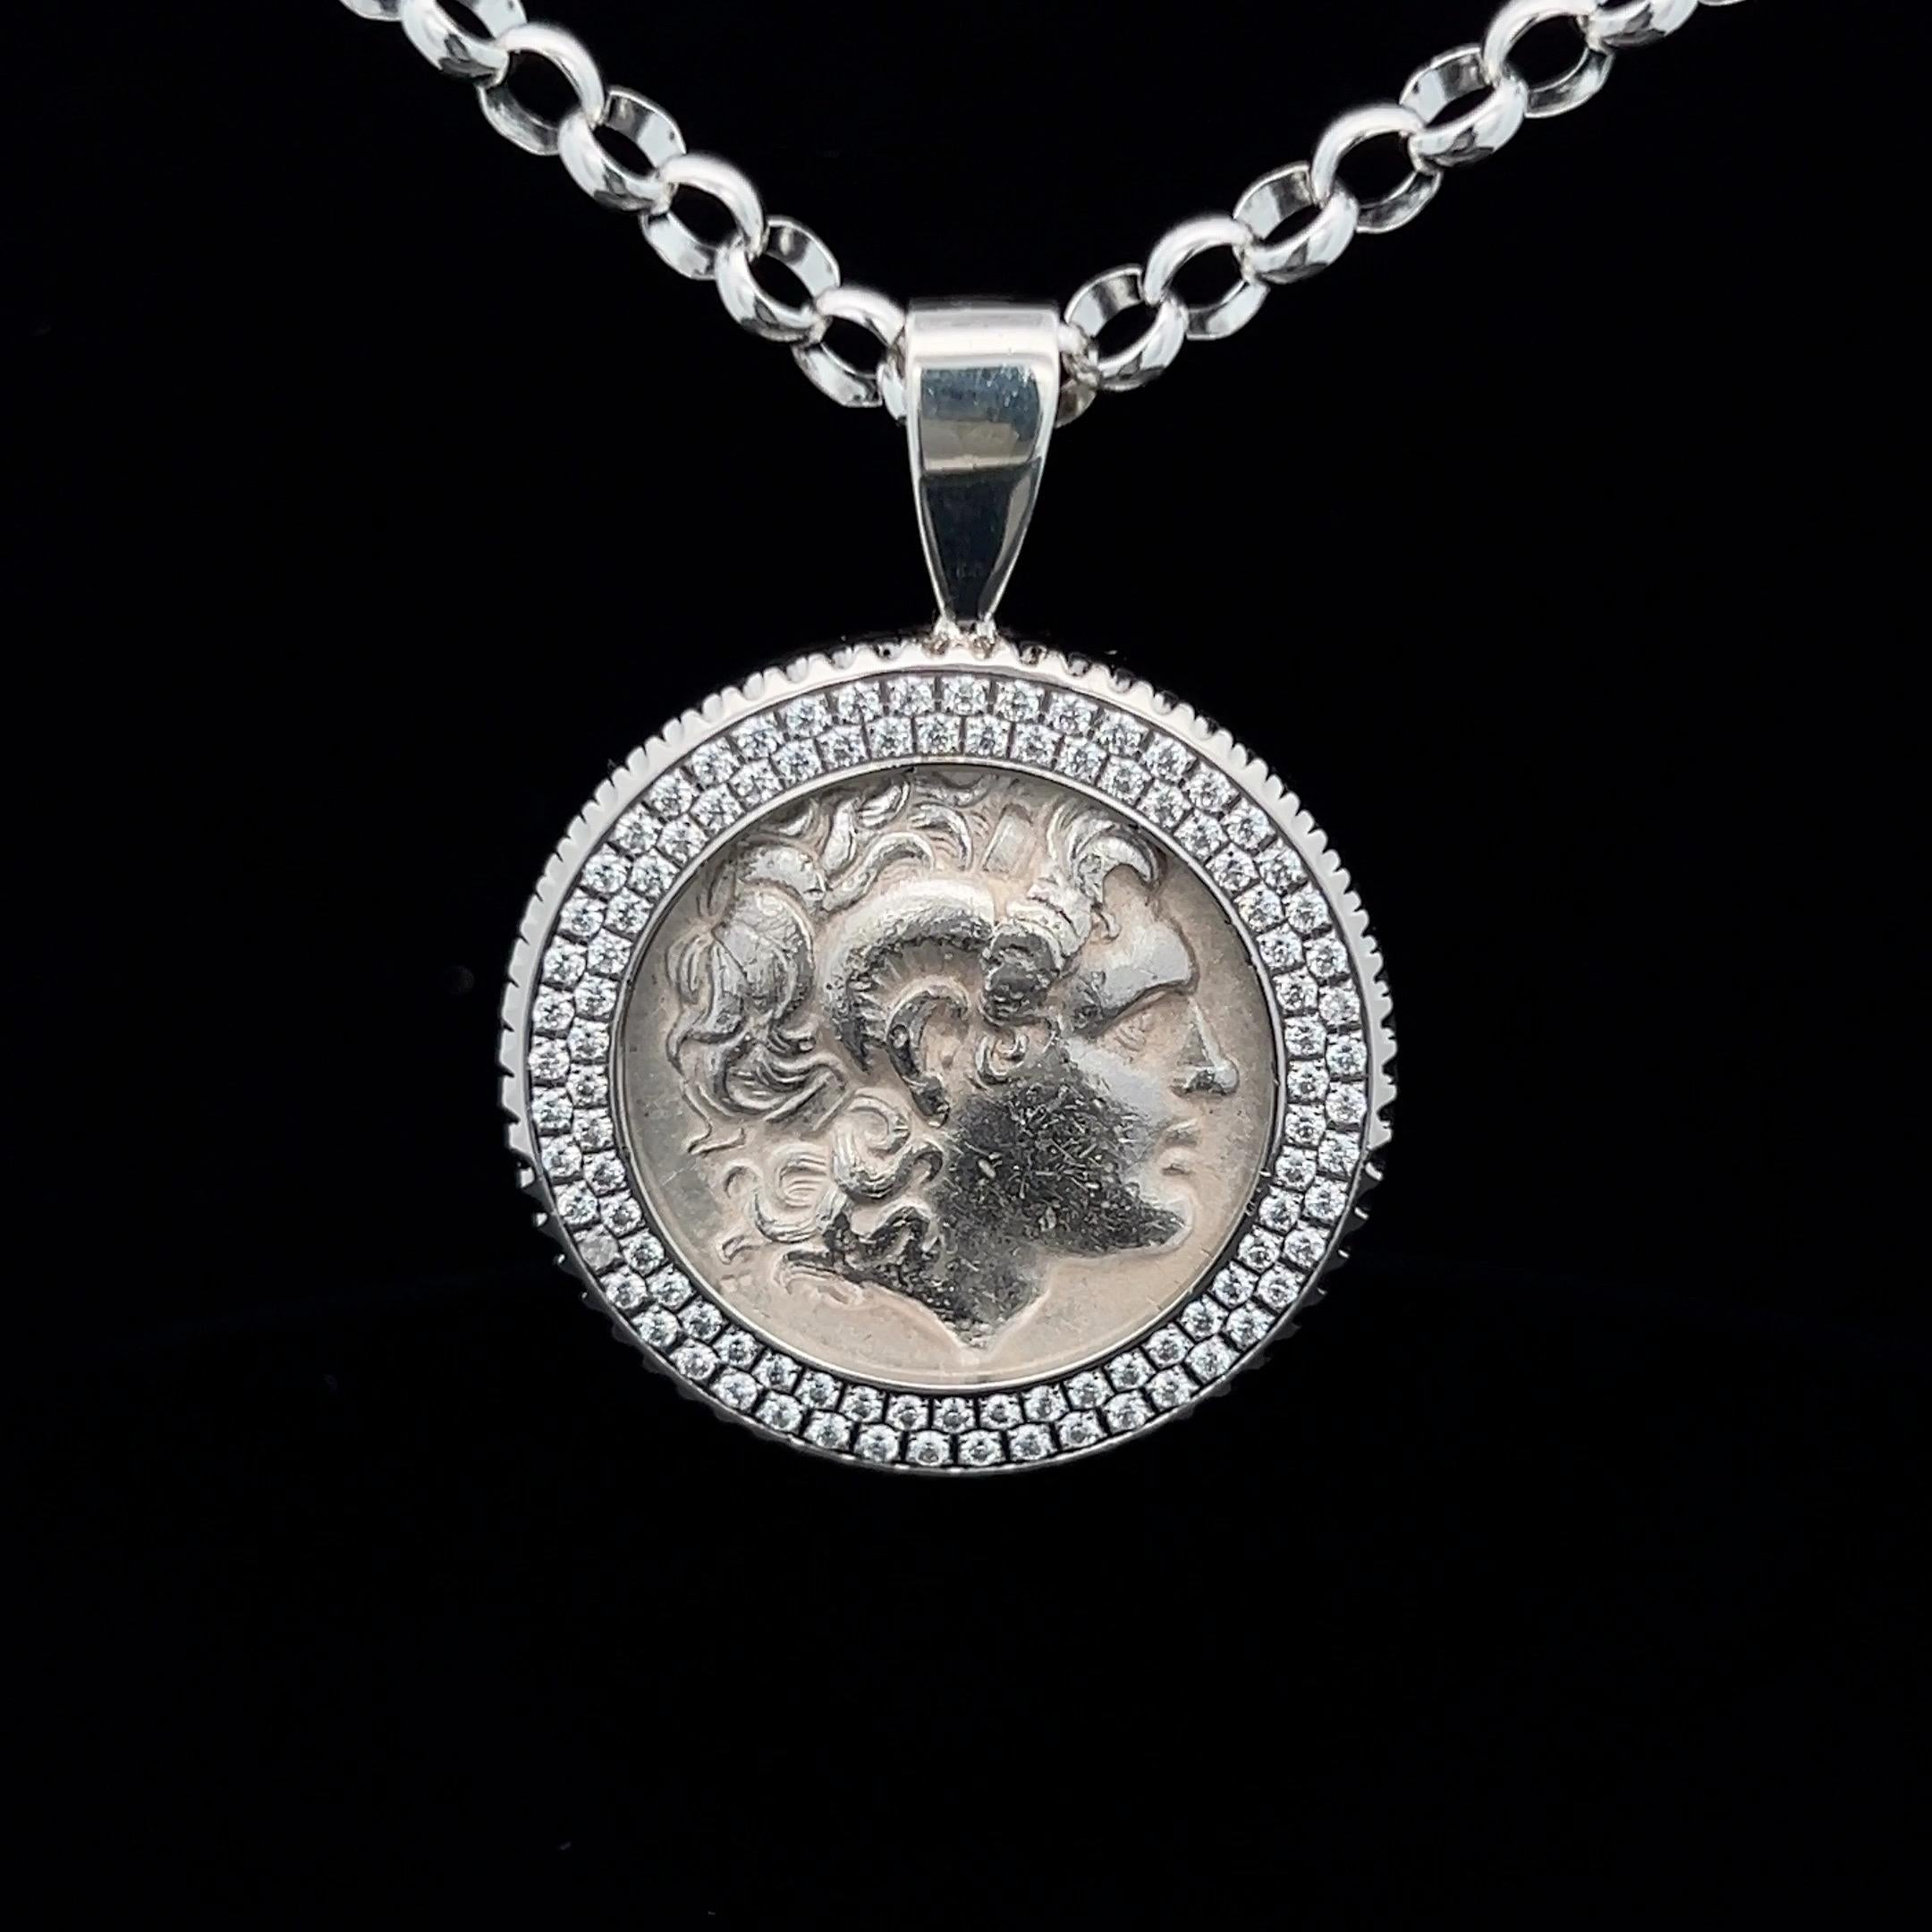 Dieses exquisite Schmuckstück zeigt eine antike griechische Silber-Tetradrachme, die für keinen geringeren als den legendären Alexander den Großen geprägt wurde. Die in einen Kristallrahmen eingefasste Münze ist ein fesselndes Stück, das uns in die